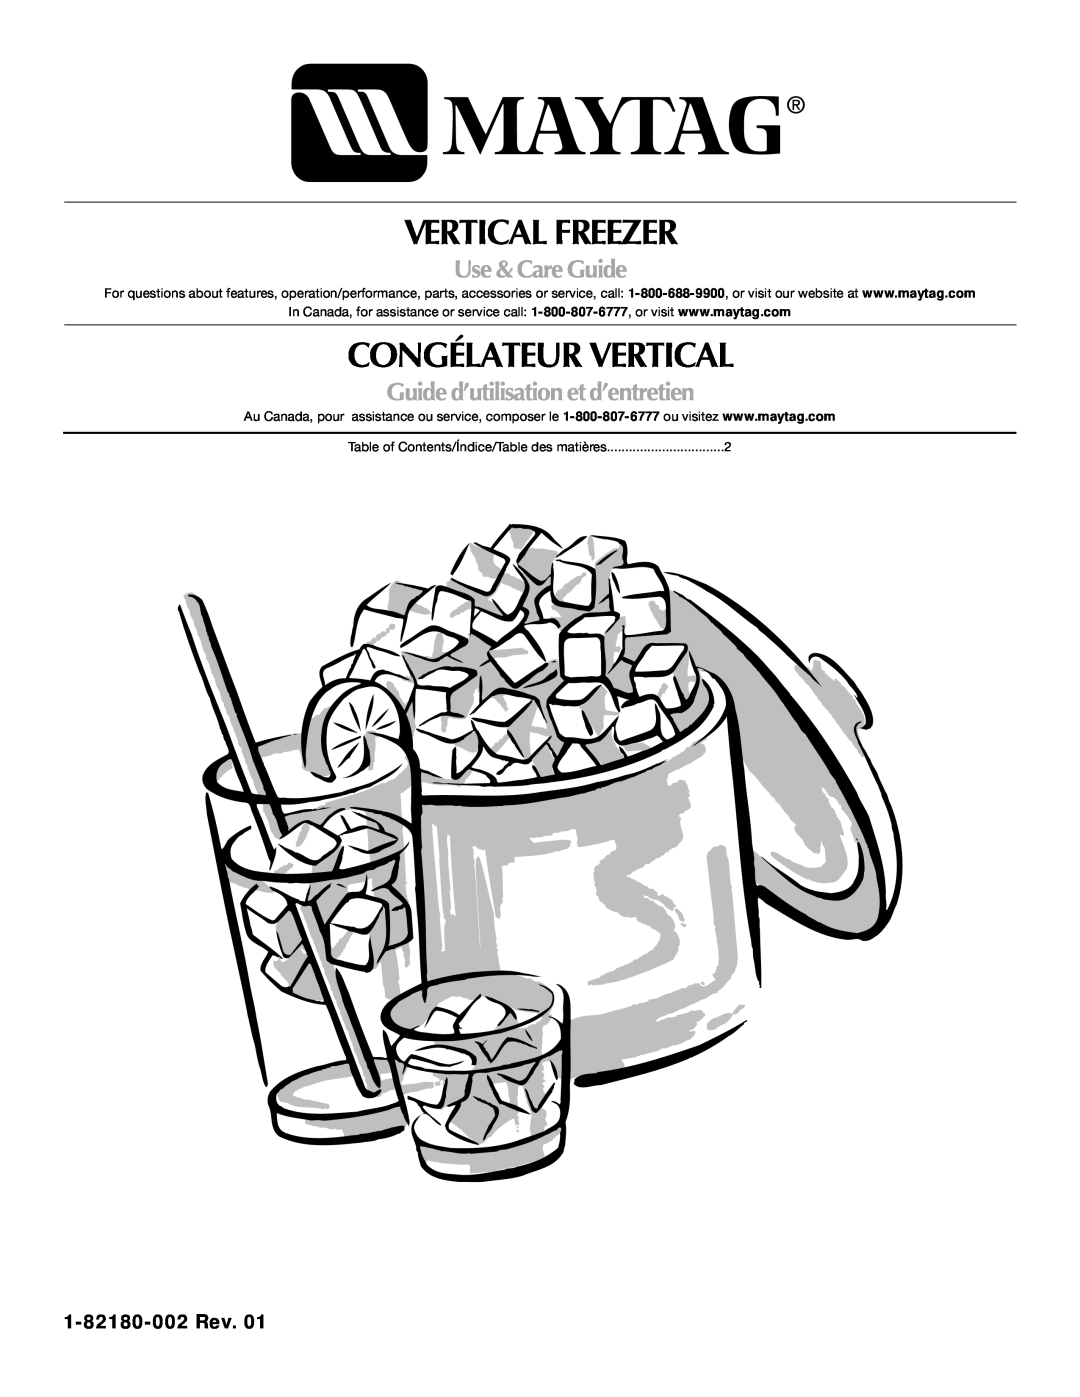 Maytag 1-82180-002 manual Vertical Freezer, Congélateur Vertical, Use & Care Guide, Guide d’utilisation et d’entretien 